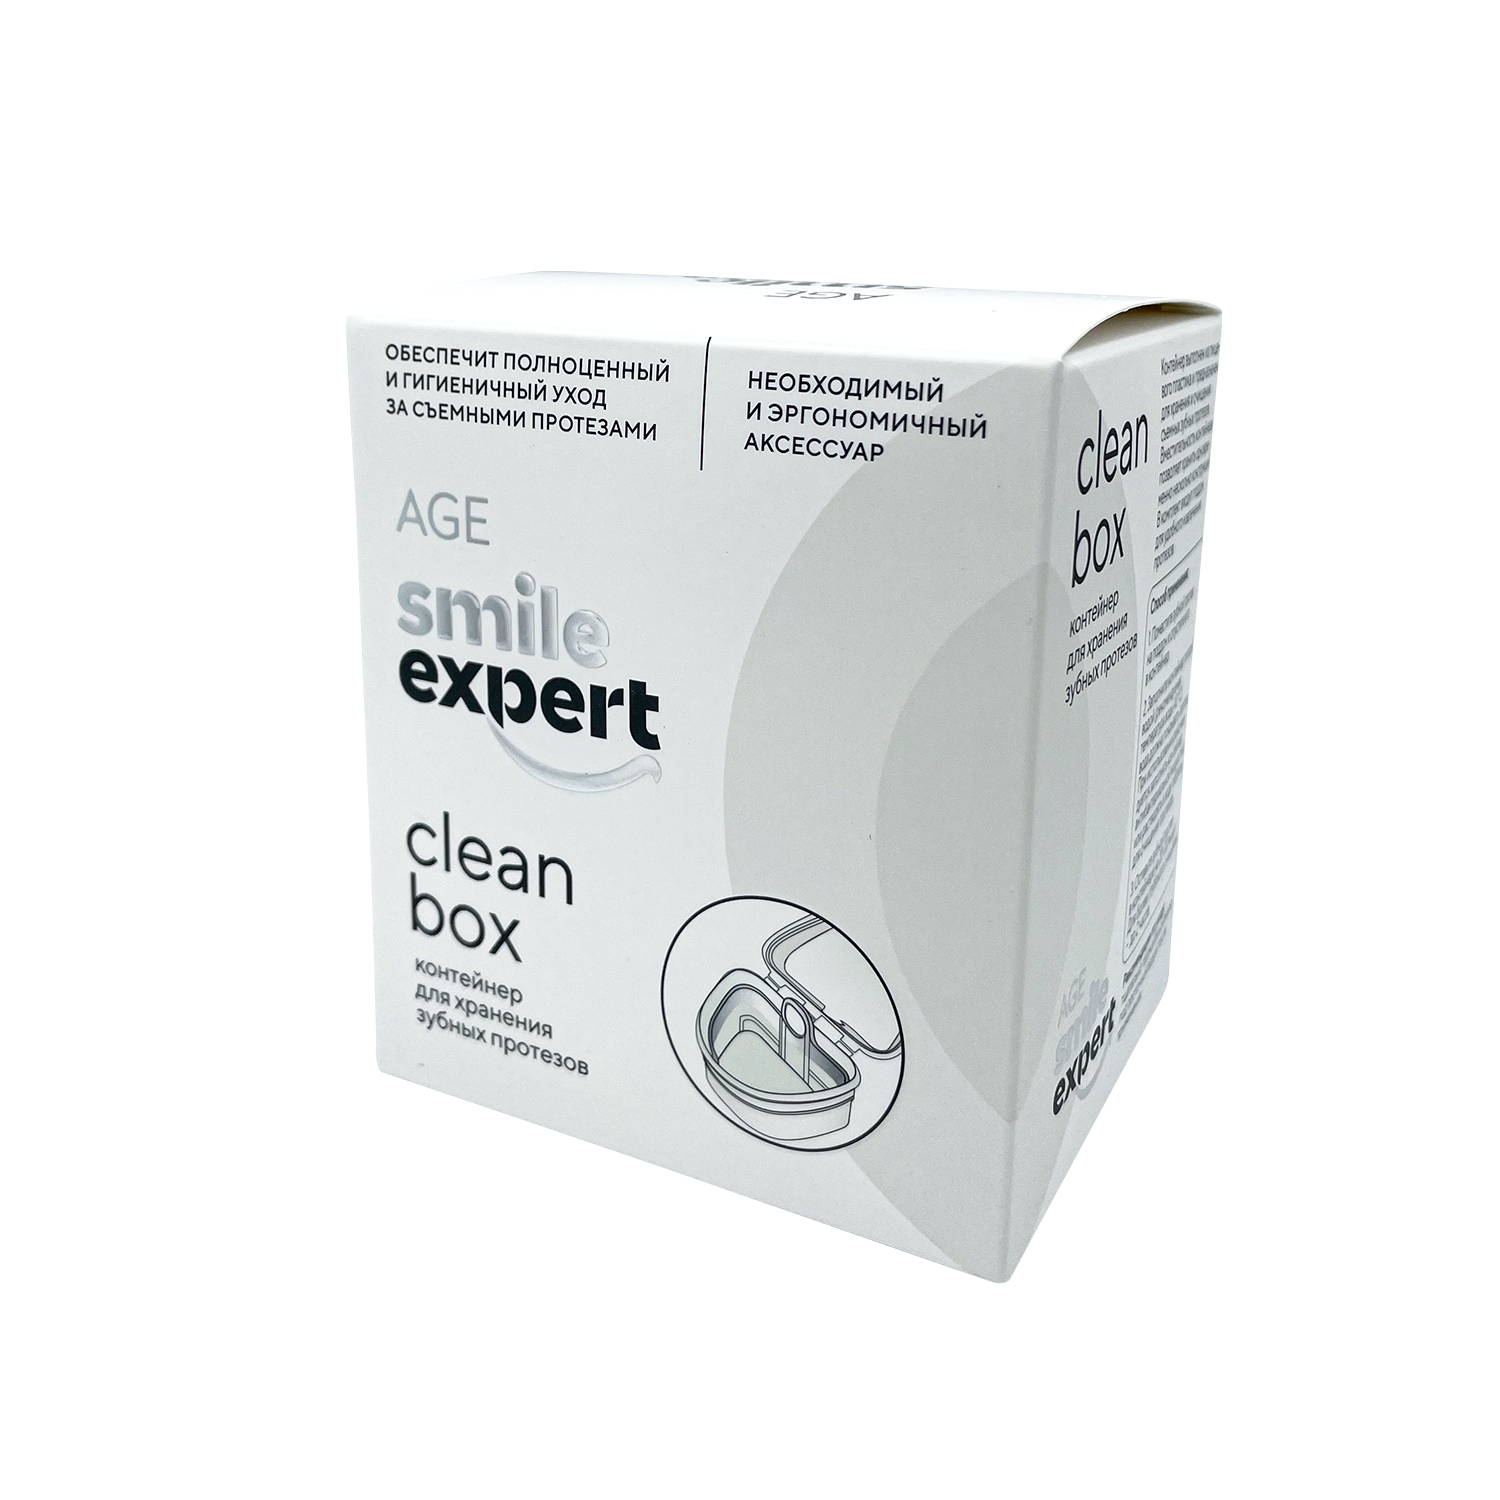 Купить Смайл Эксперт Эйдж контейнер для хранения зуб. протезов №1, Anhui Greenland Biotech Co., Ltd